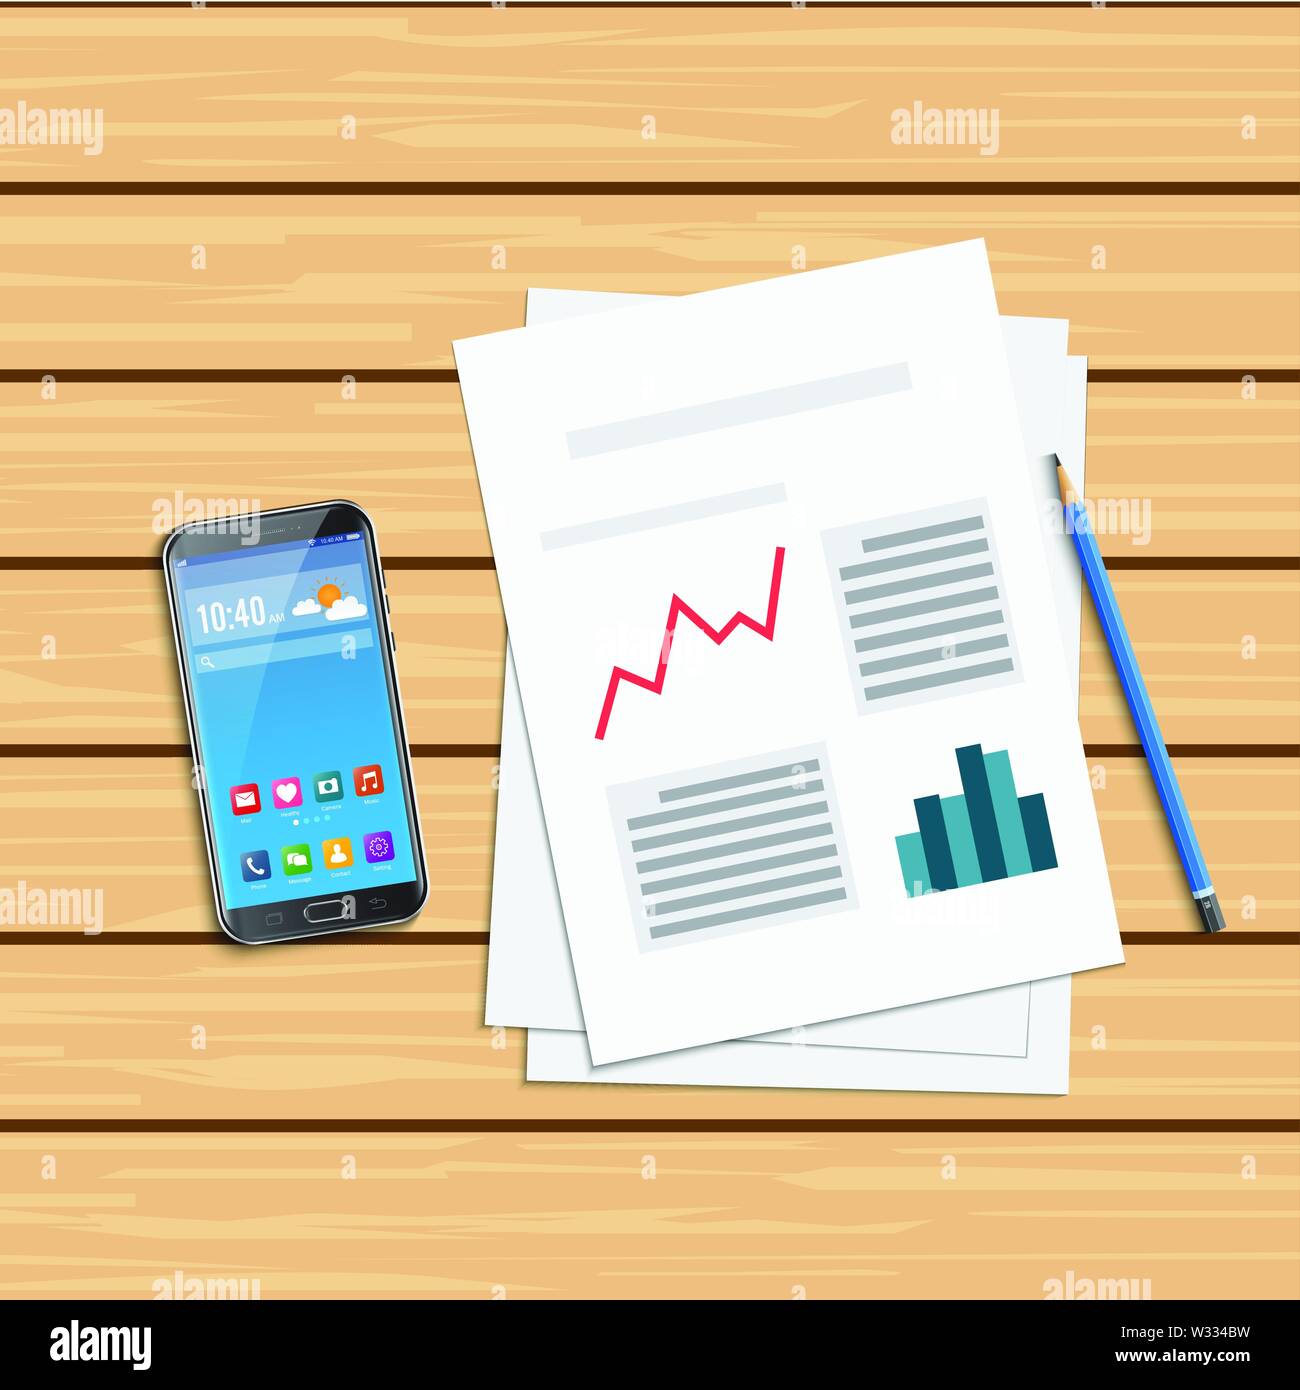 Analyse der statistischen Daten und Smartphone. Forschung Optimierung finanzielle Infografik, Business Analytics, Abbildung Stock Vektor